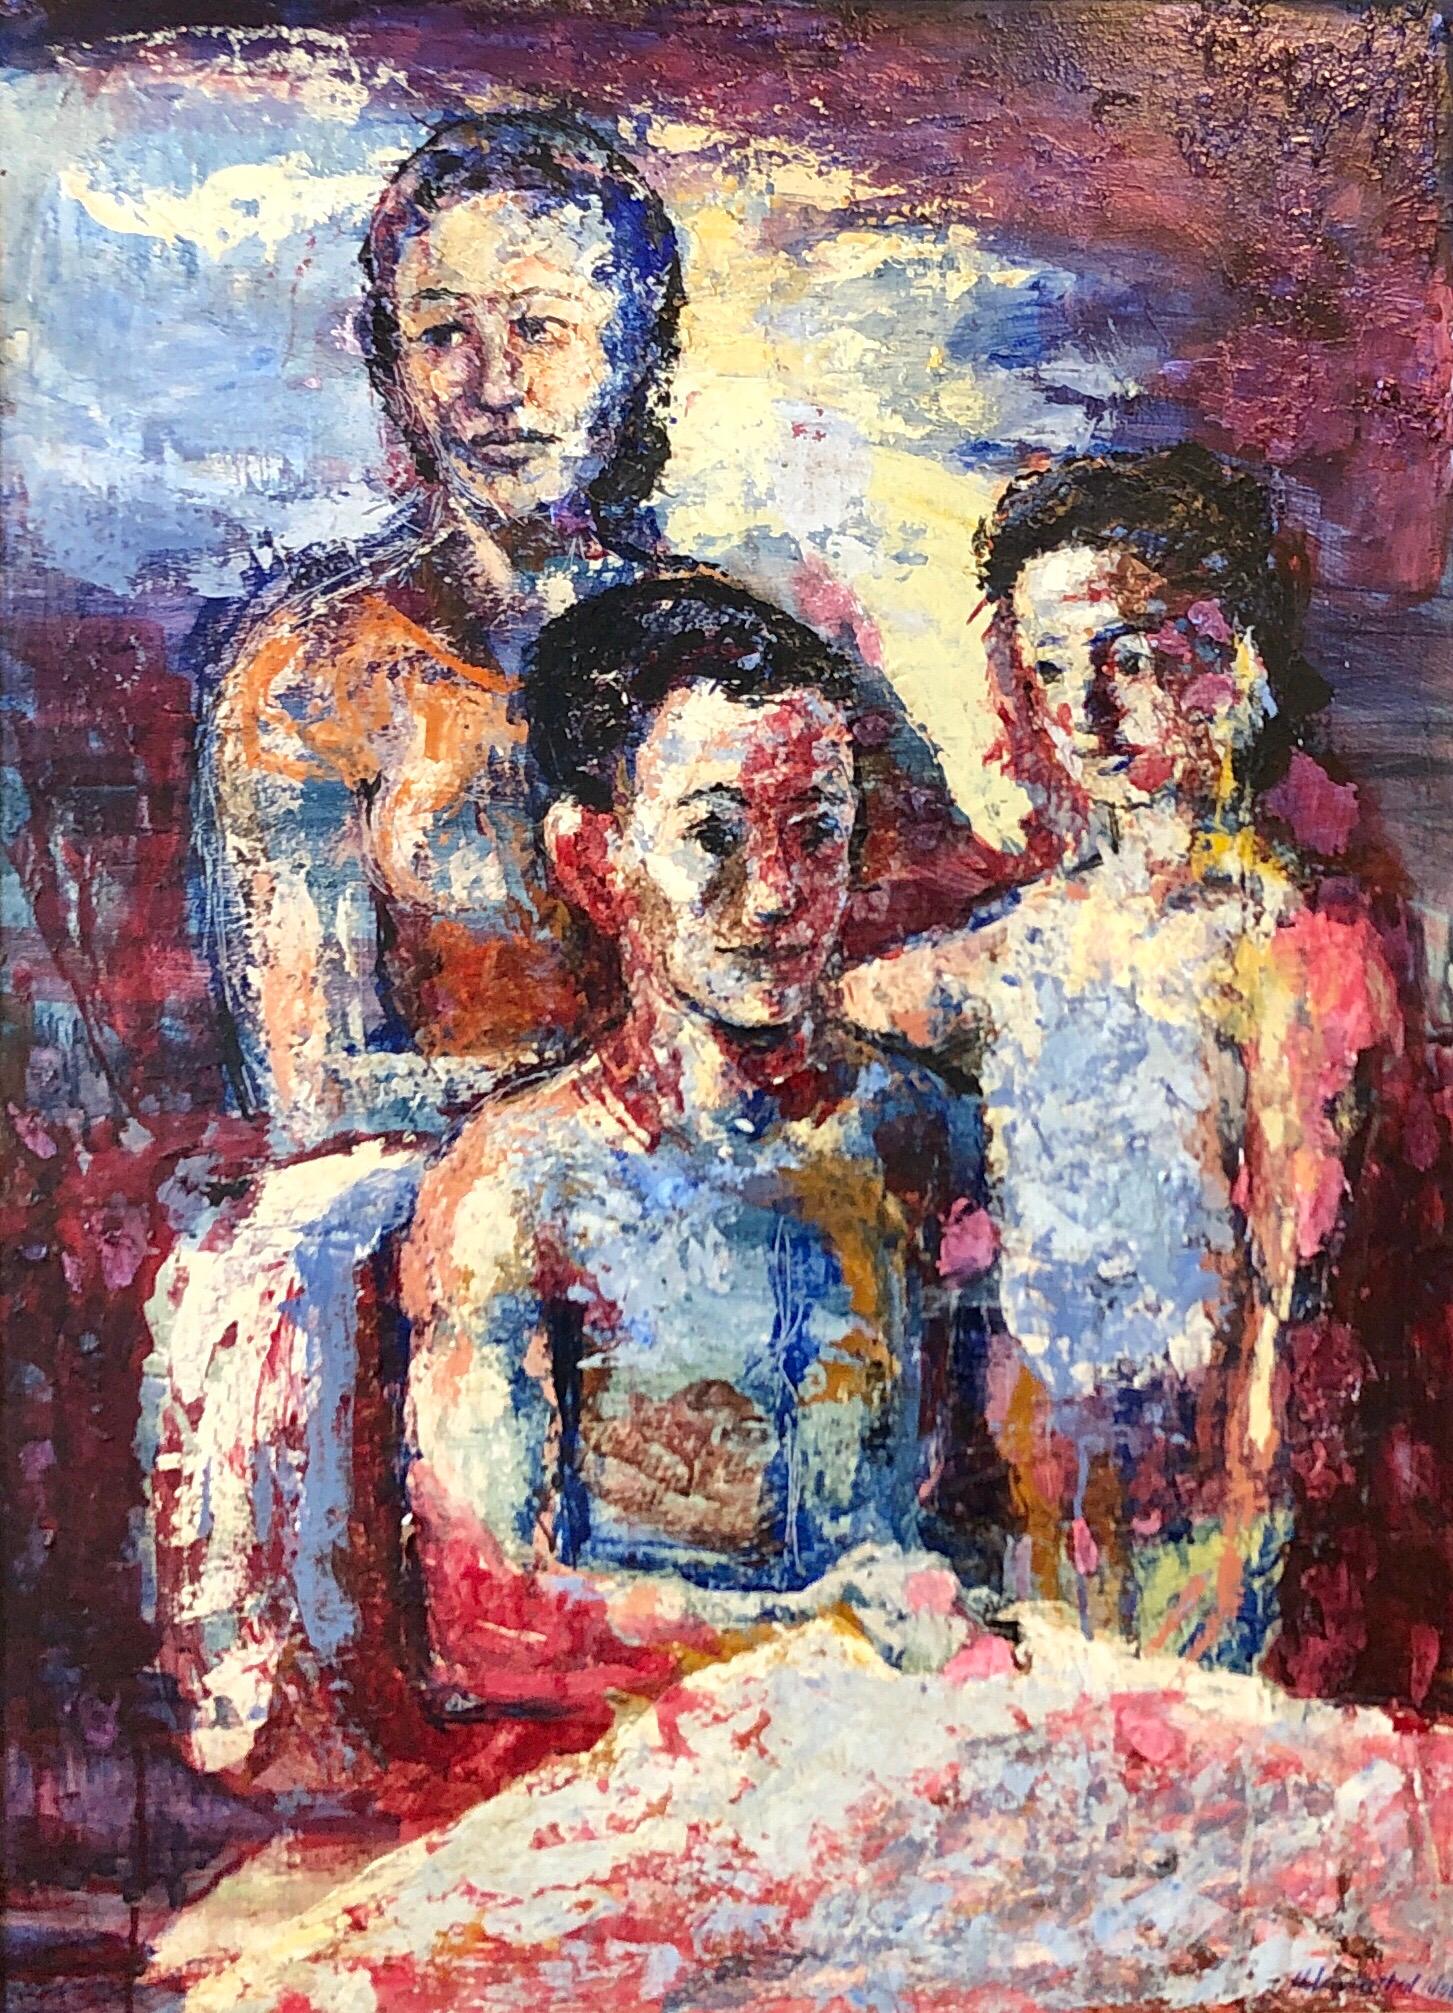 Familienporträt, großes surrealistisches Ölgemälde Mutter, Kinder, Neo- Surrealismus – Painting von Hank Laventhol